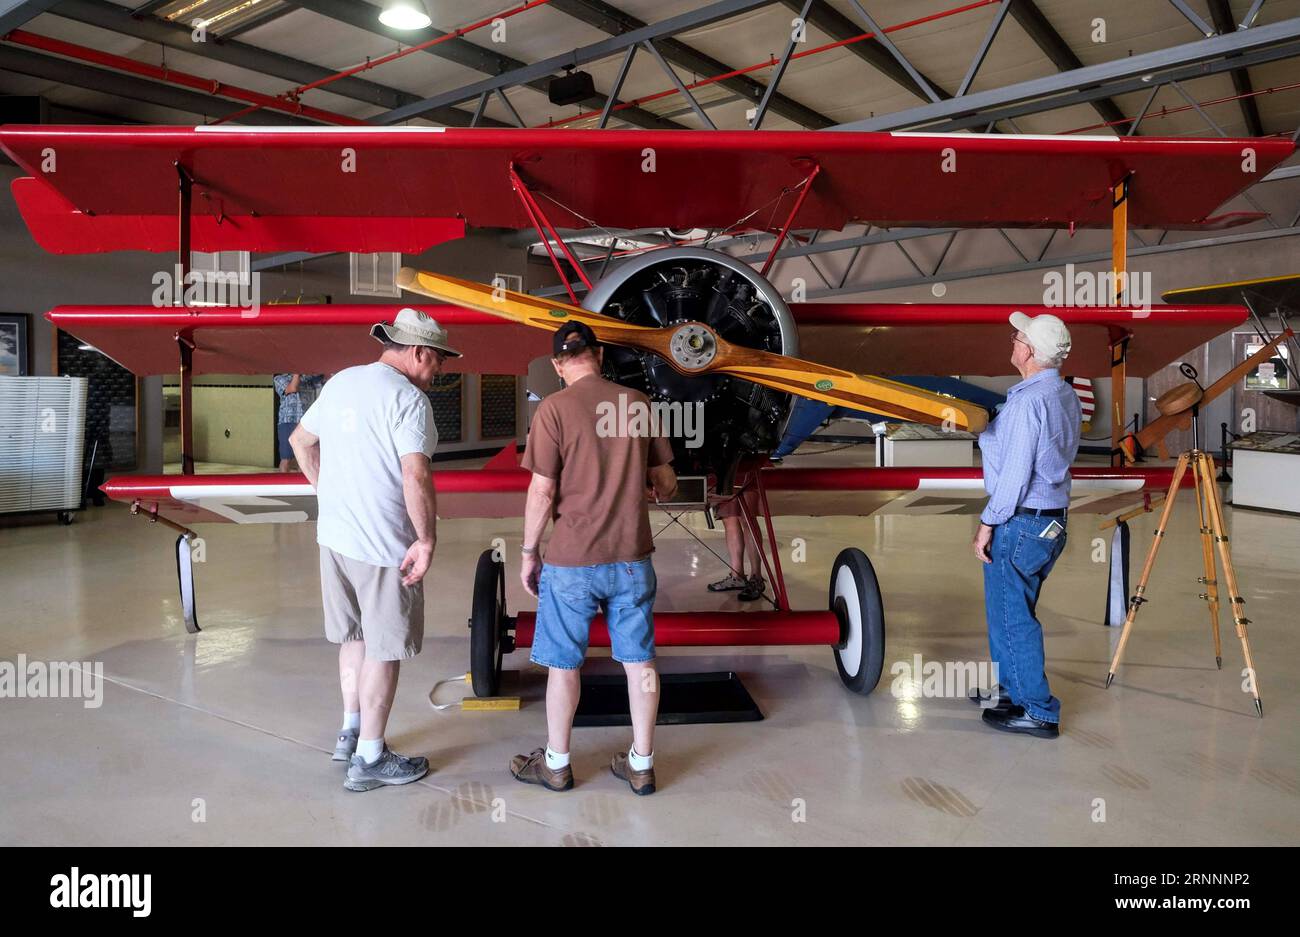 (170723) -- CALIFORNIE, 23 juillet 2017 -- des gens visitent la première Guerre mondiale et le spectacle des premiers avions au planes of Fame Air Museum à Chino en Californie, aux États-Unis, le 22 juillet 2017.) (Zxj) US-CALIFORNIA-AIRCRAFT SHOW ZhaoxHanrong PUBLICATIONxNOTxINxCHN Californie juillet 23 2017 célébrités visitent le World was I et Early Aircraft Show au Plan of Fame Air Museum à Chino of California États-Unis juillet 22 2017 U S California Aircraft Show ZhaoxHanrong PUBLICATIONxNOTxINxCHN Banque D'Images